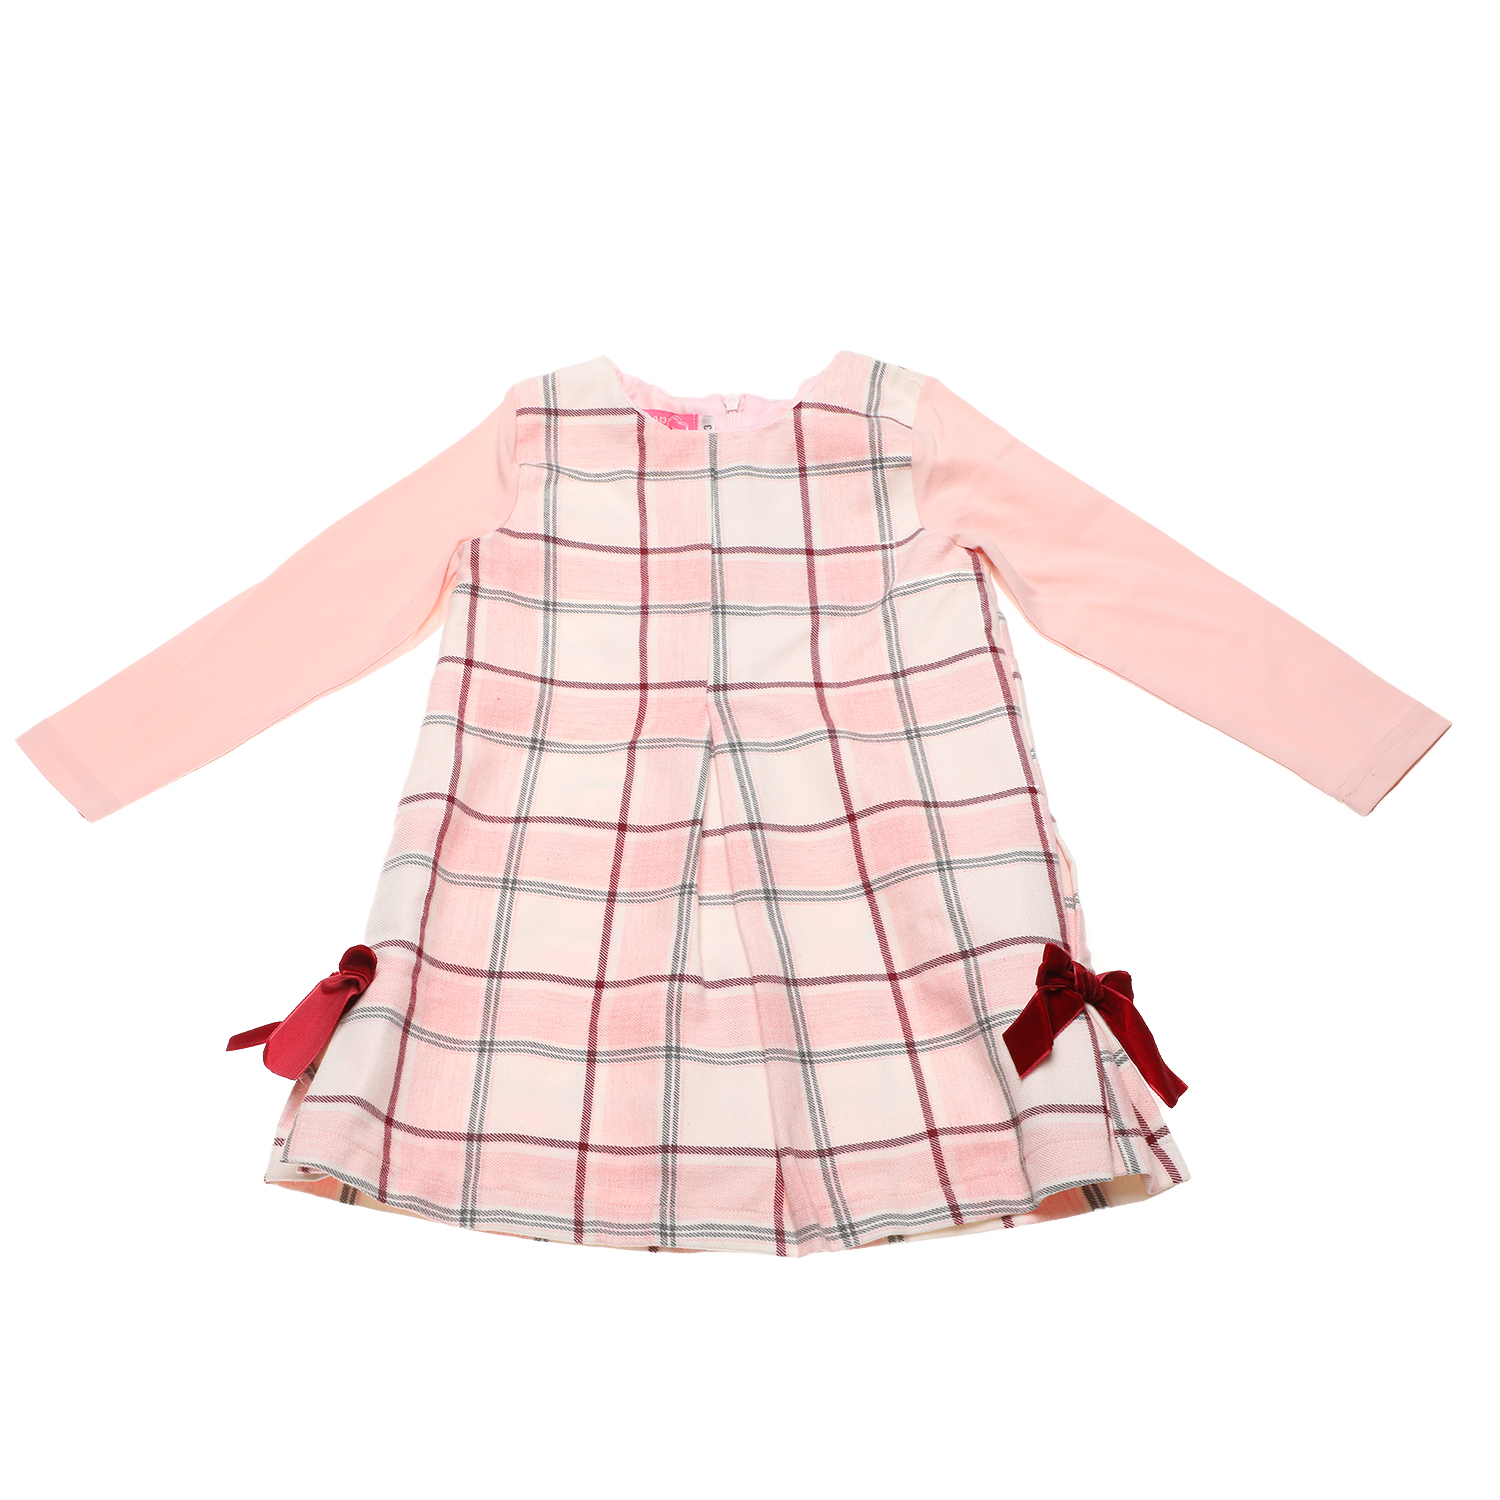 Παιδικά/Girls/Ρούχα/Φορέματα Μακρυμάνικα SAM 0-13 - Παιδικό φόρεμα SAM 0-13 καρό ροζ γκρι